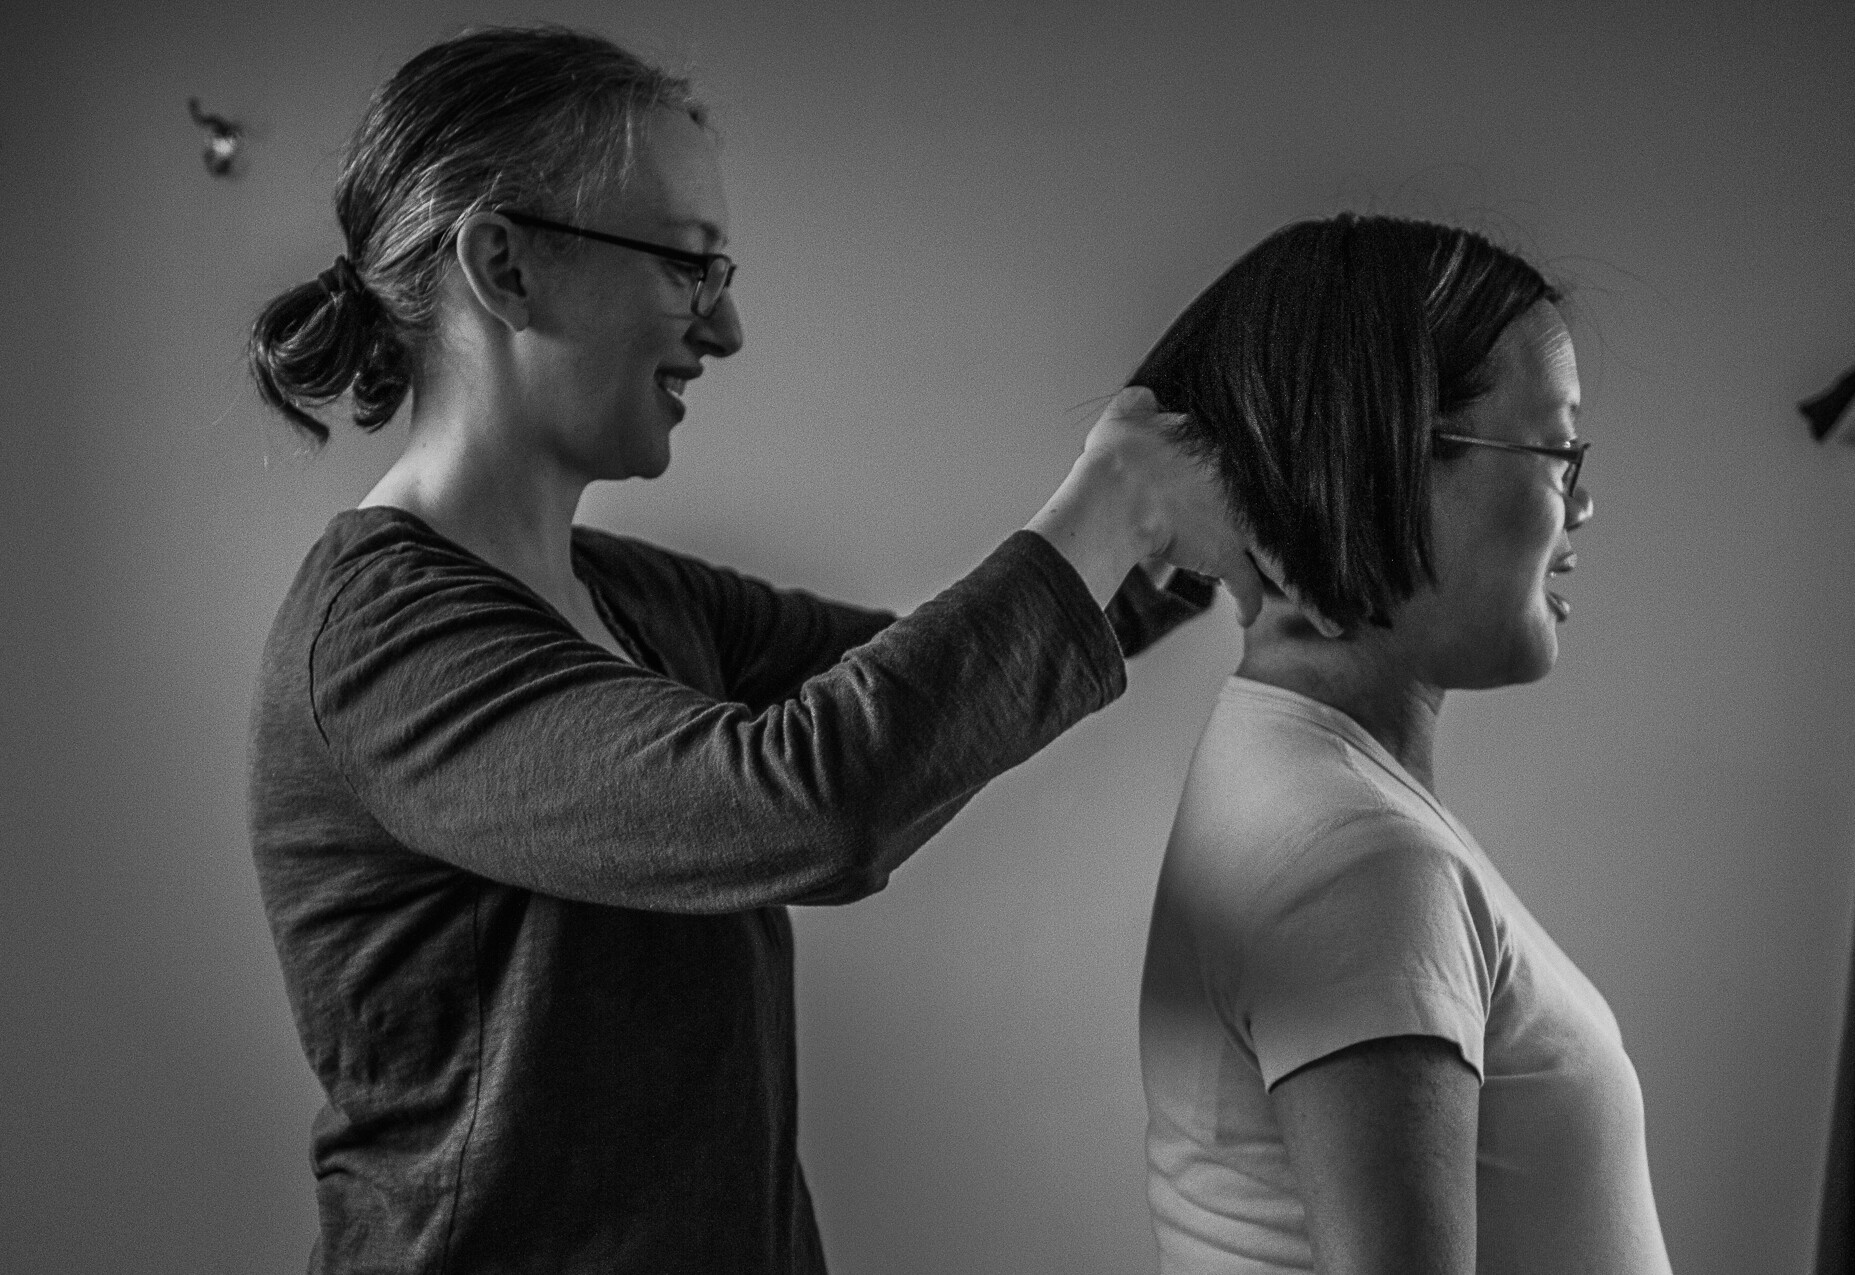 A woman cutting a girl's hair.